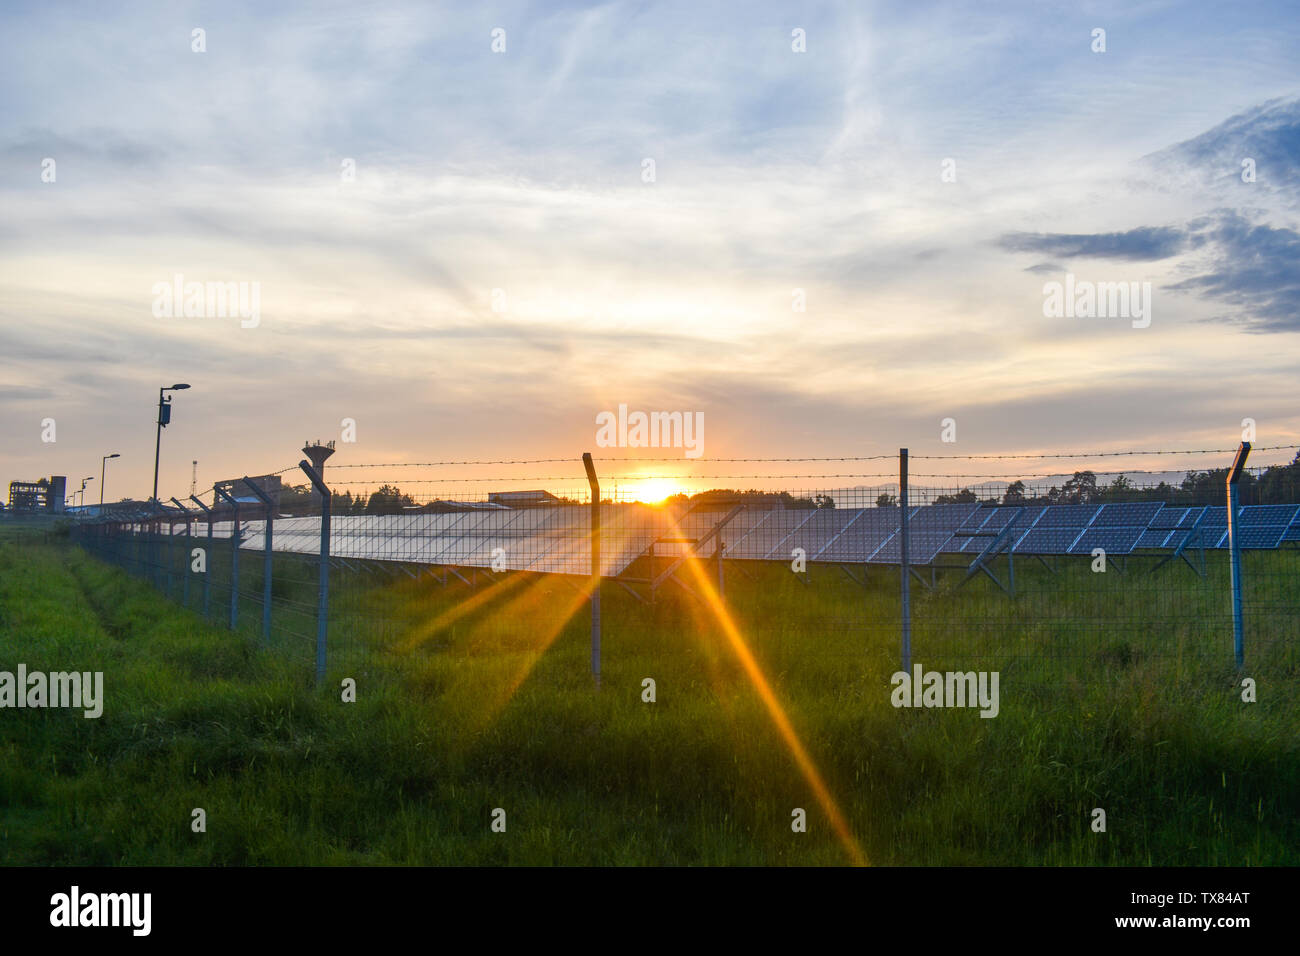 Sonnenuntergang über eine Photovoltaikanlage mit Photovoltaik-modulen für erneuerbare Energie auf dem Feld. Solar Power Generation Ausrüstung mit Europa gebaut Stockfoto